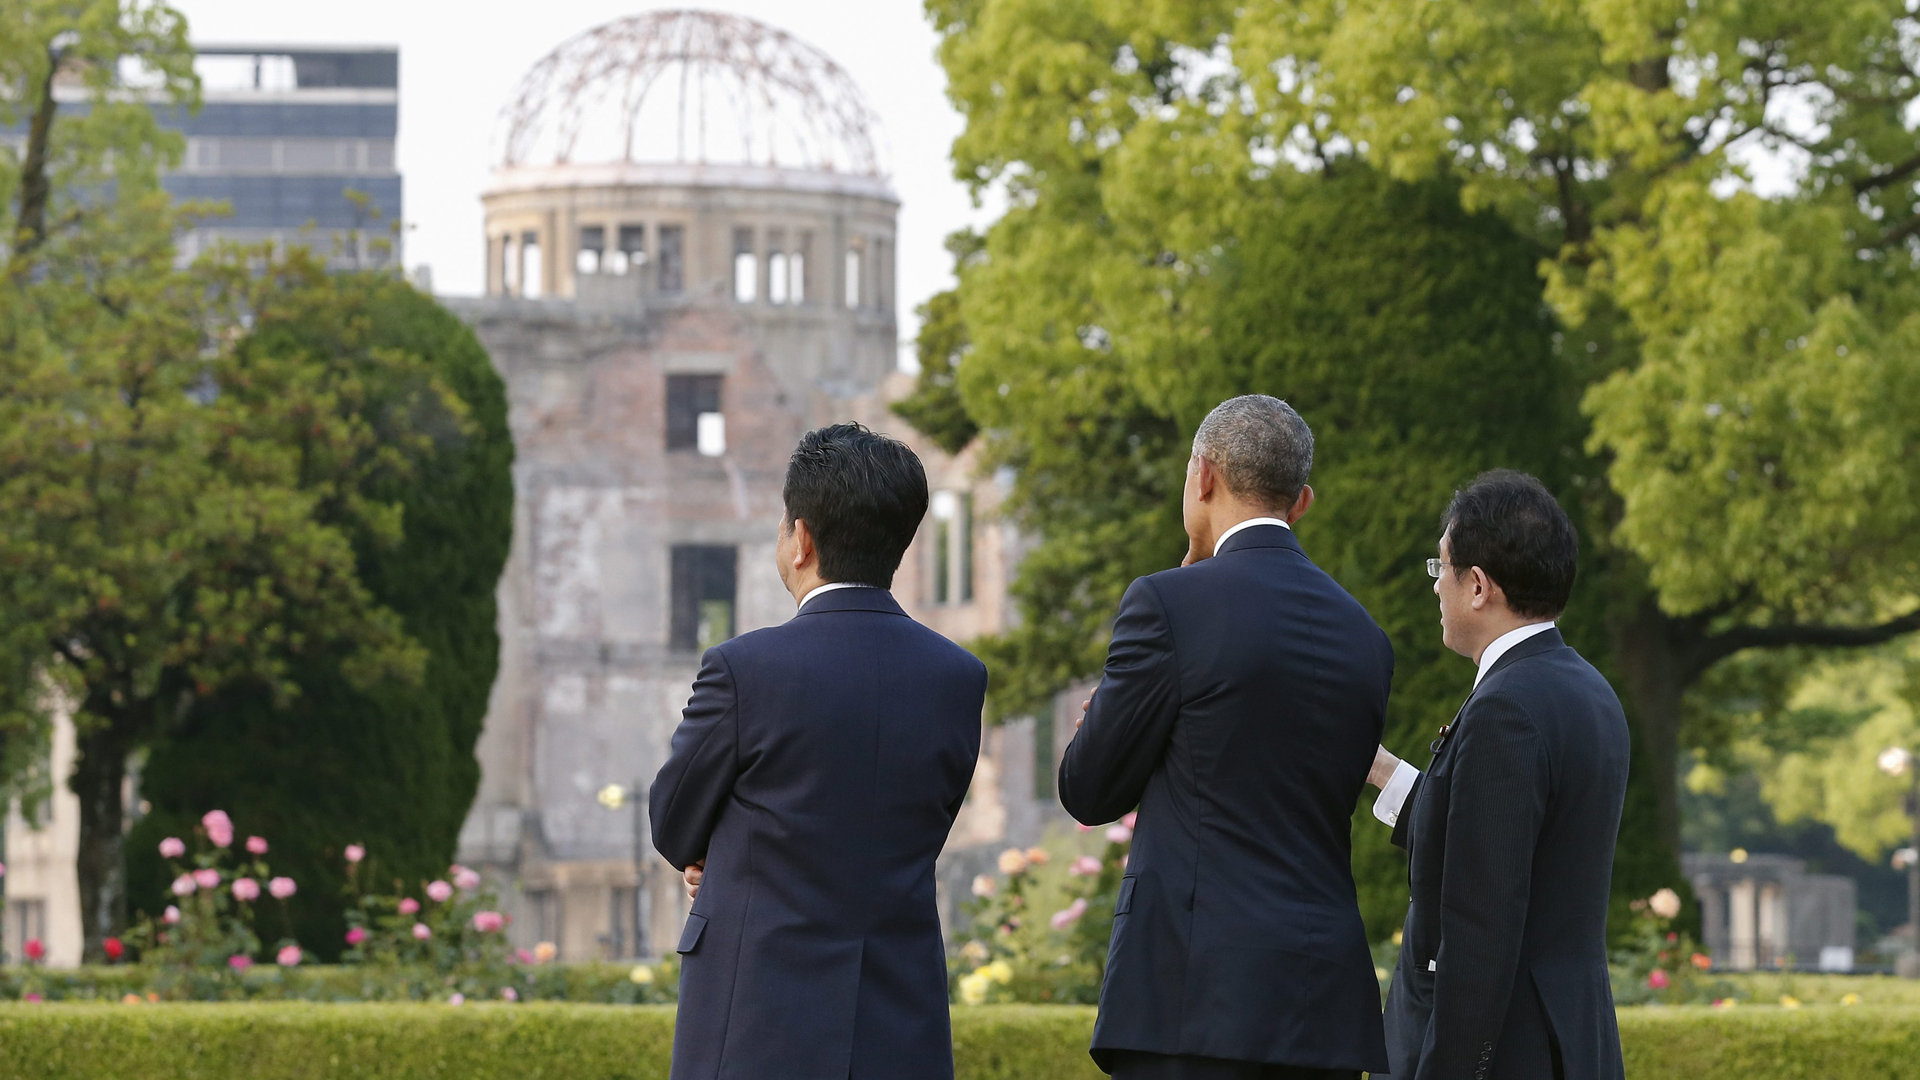 2016 besuchte Kishida mit Japans damaligem Premier Shinzo Abe (links im Bild) und US-Präsident Barack Obama die Hiroshima-Gedenkstätte (Foto vom 27.05.2016). | picture alliance / dpa